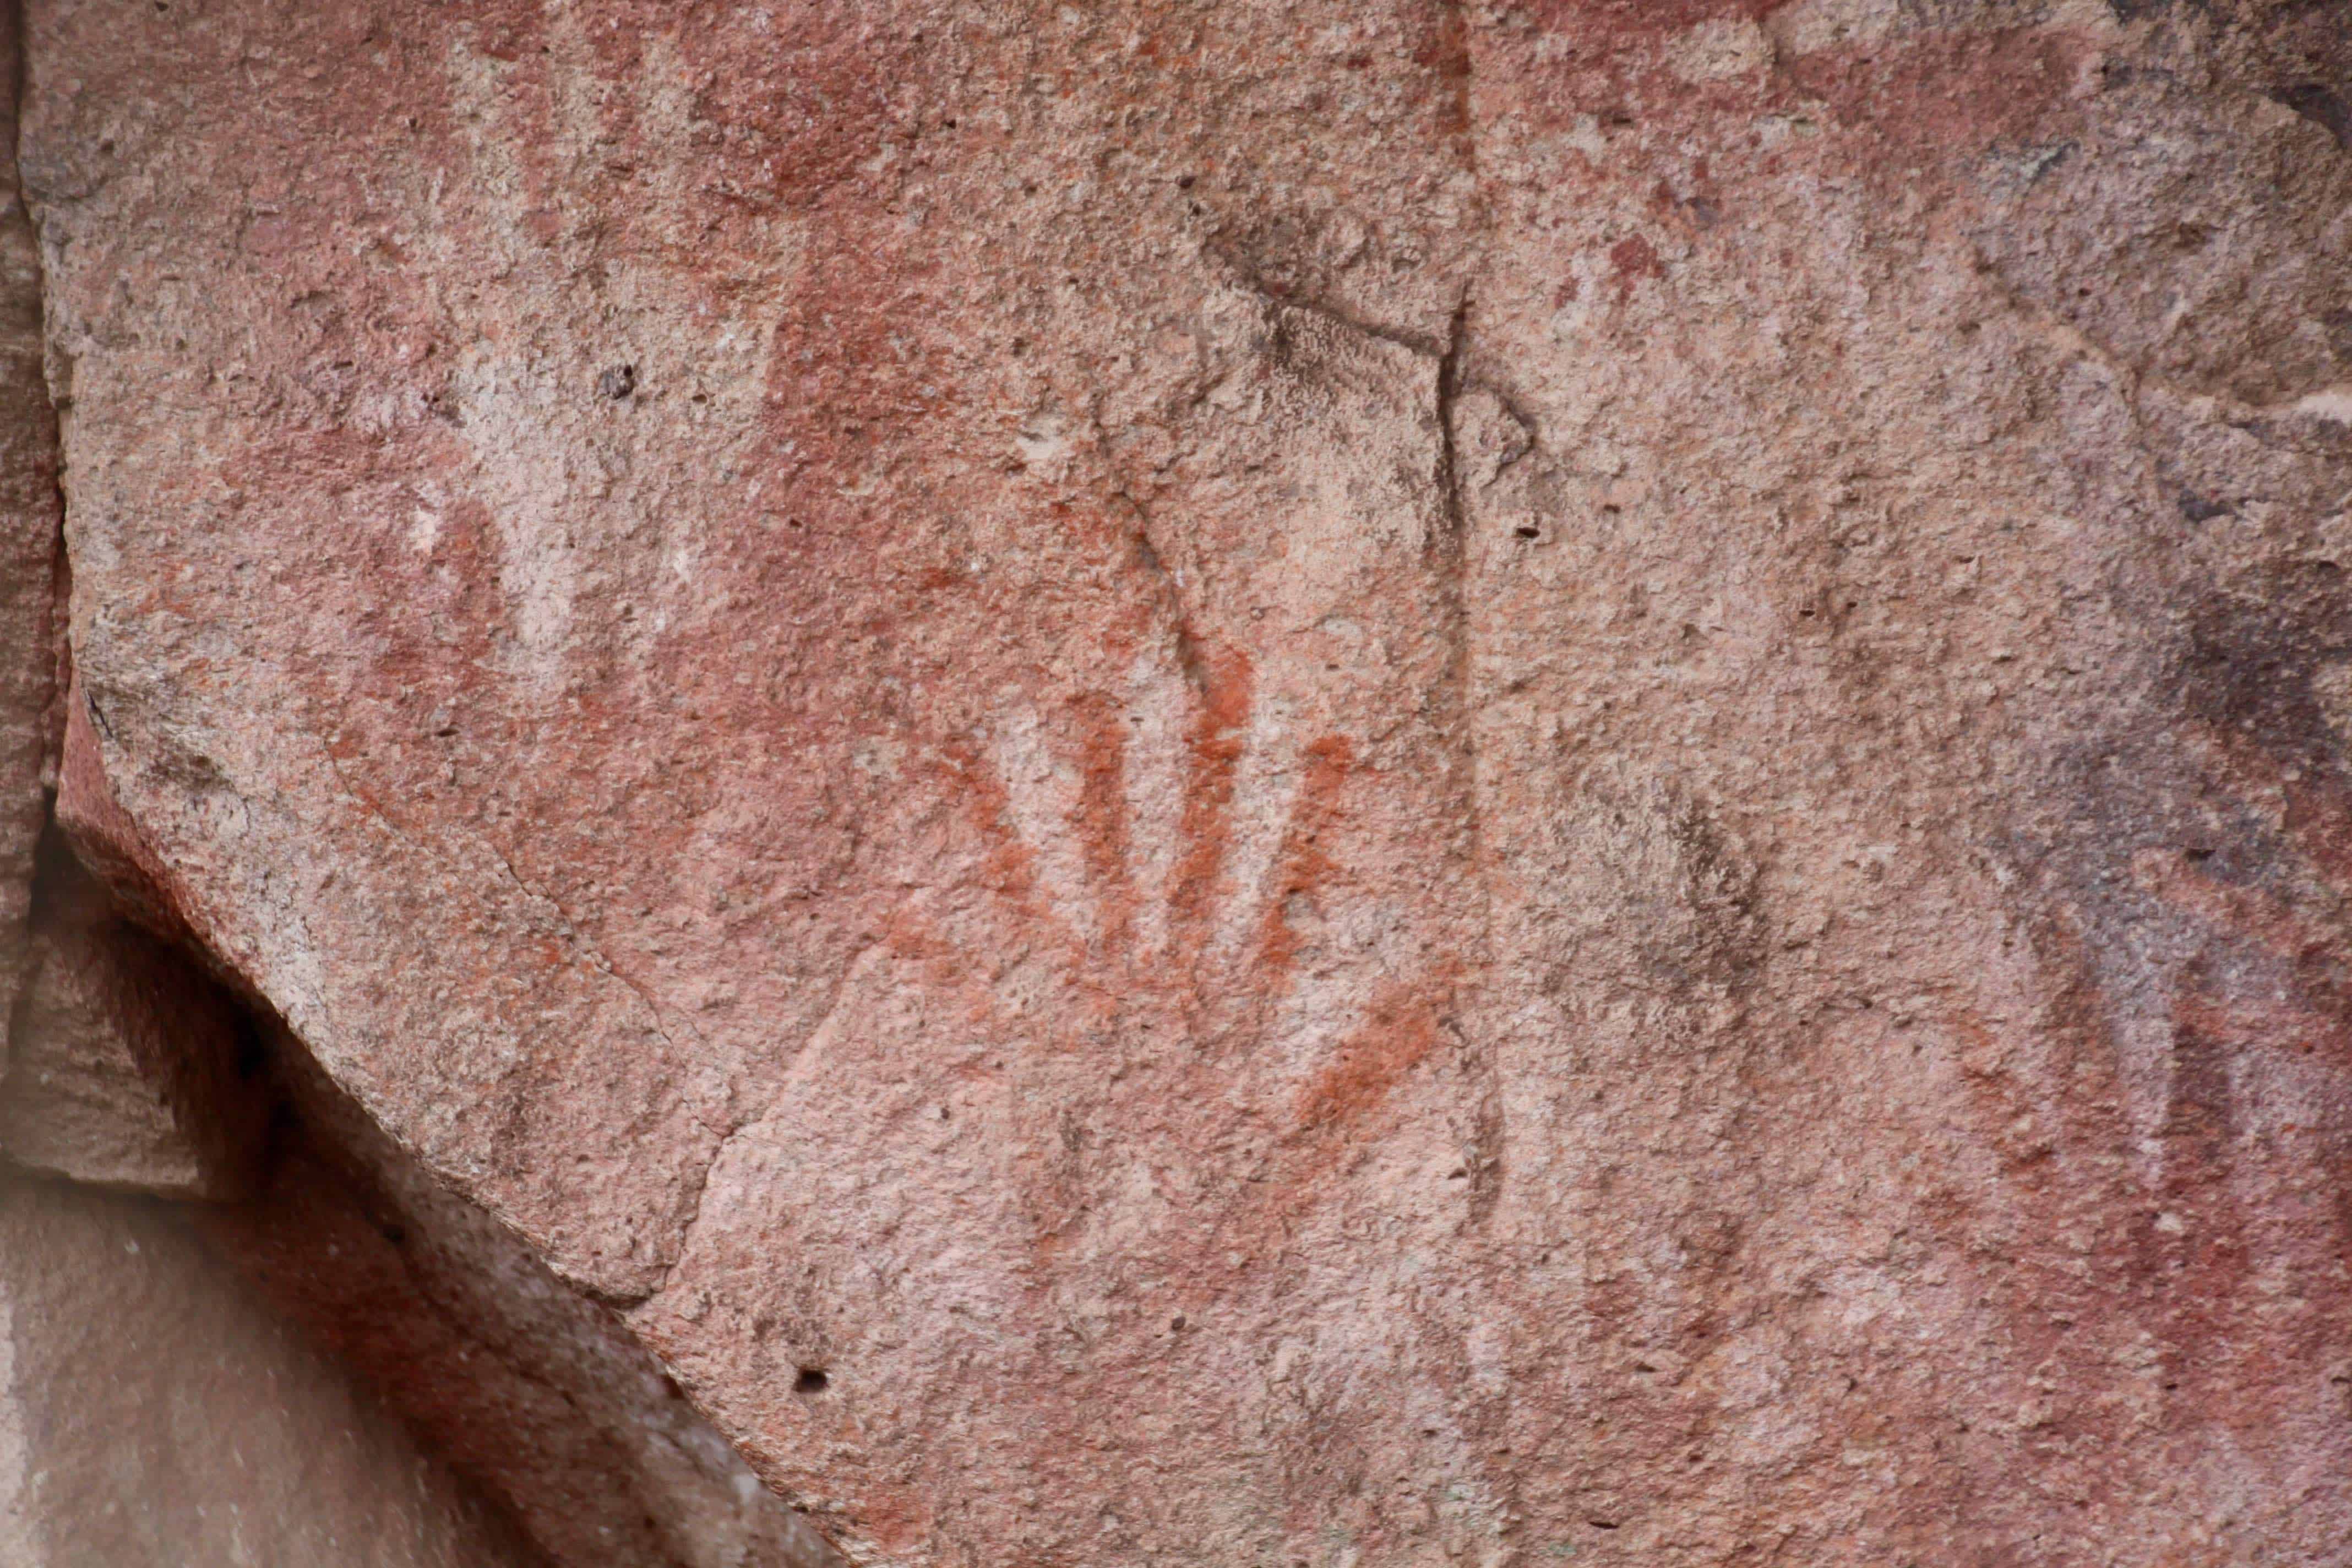 Ancient hand print of a six-fingered person at Cueva de las Manos